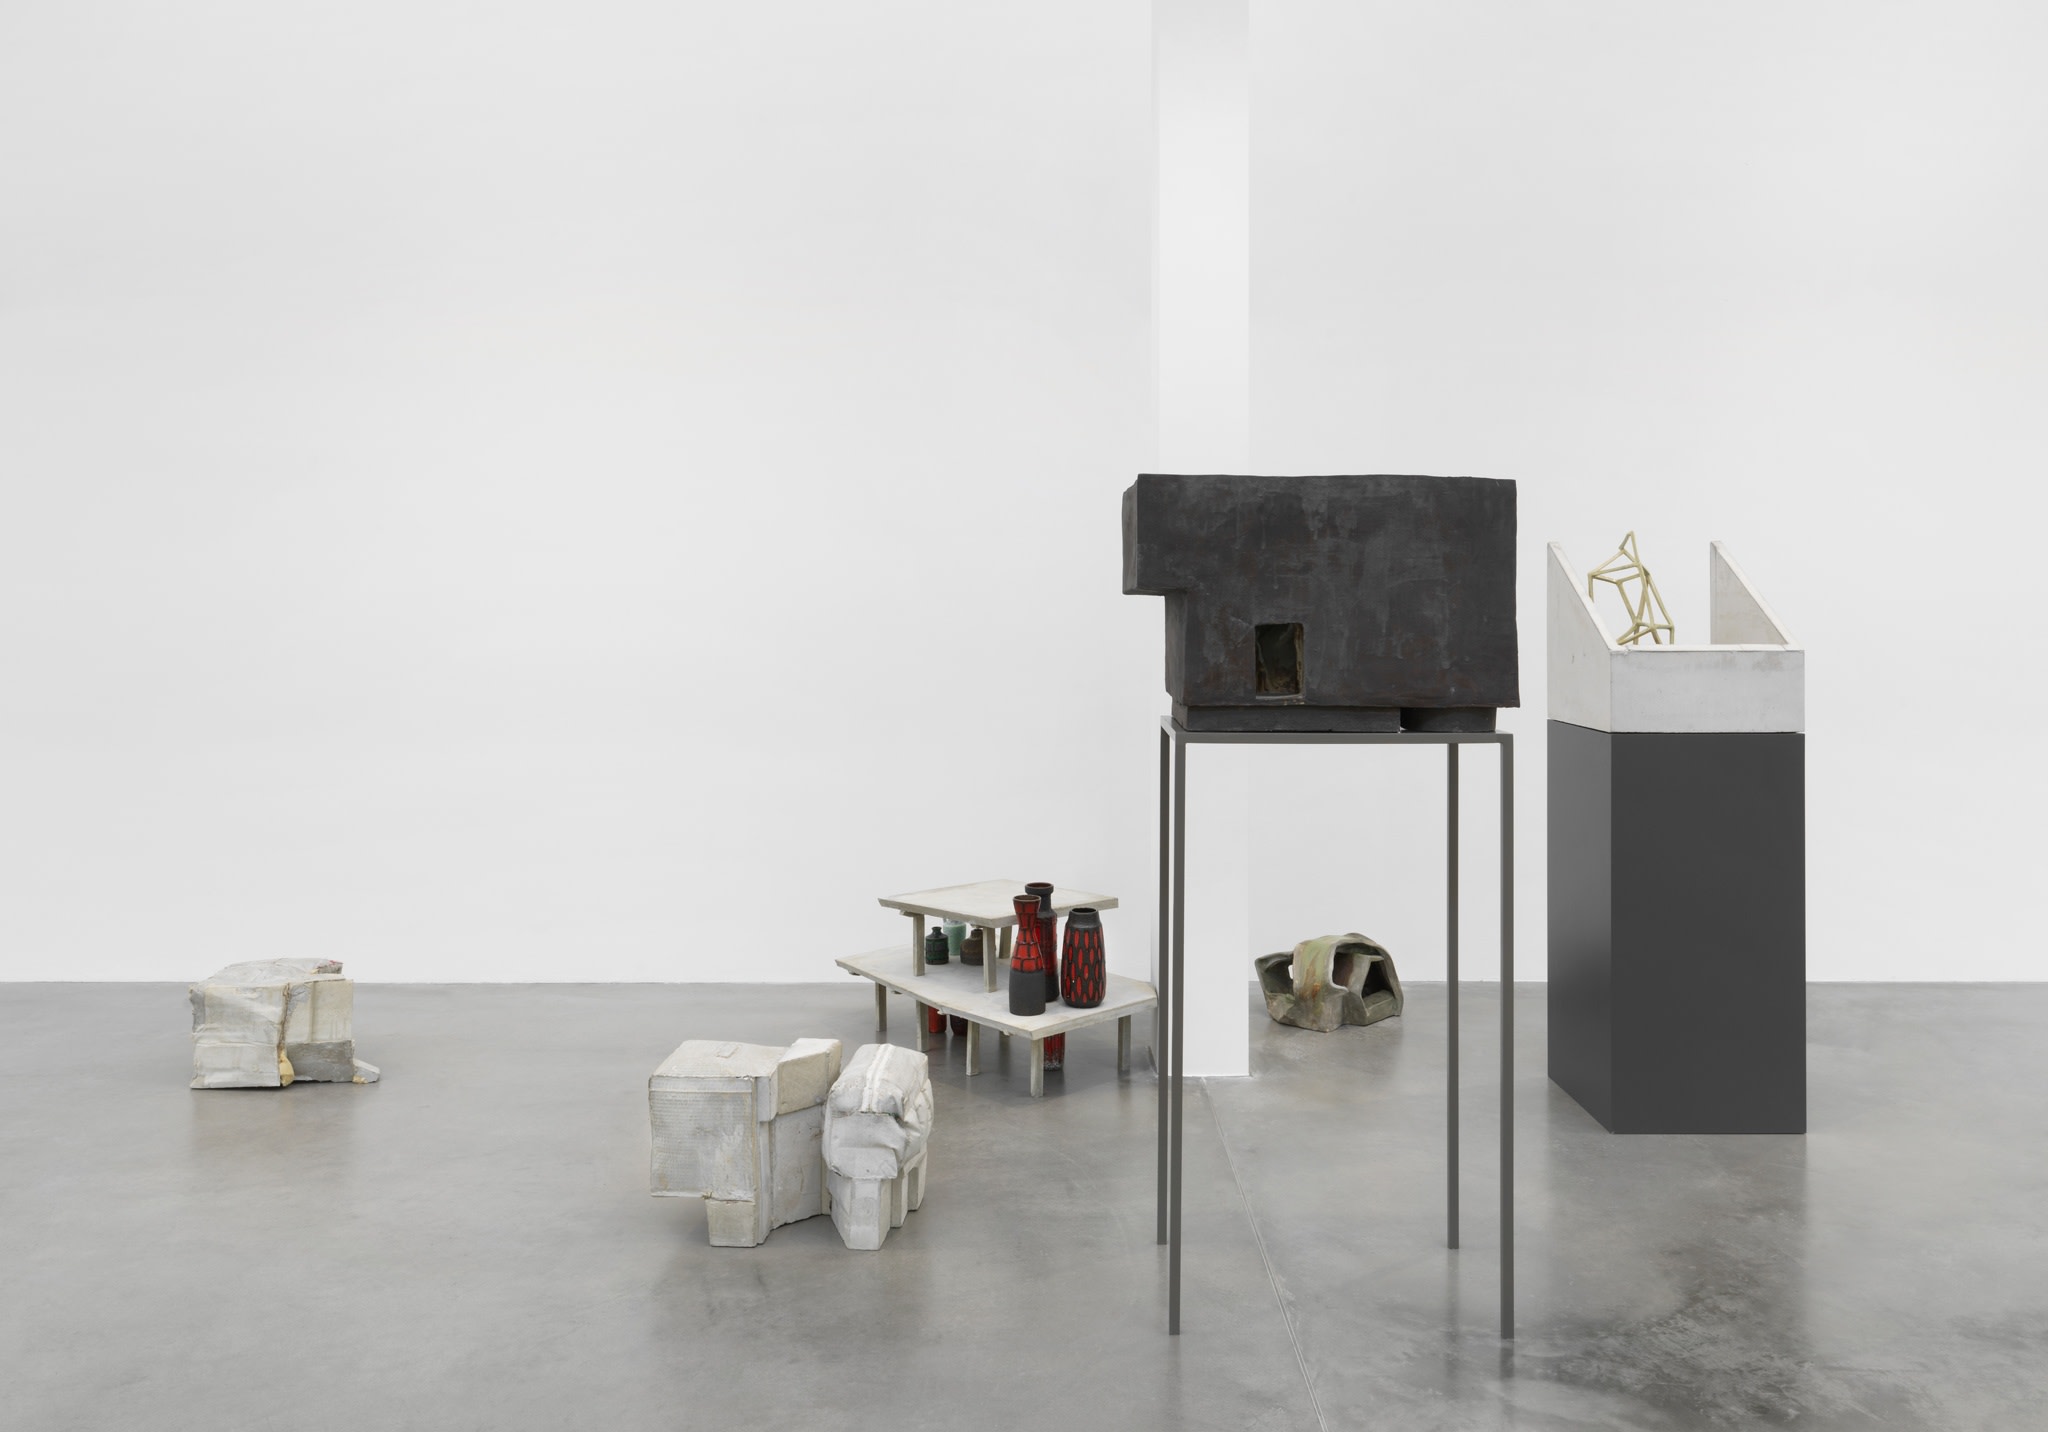 Exhibition view: Isa Melsheimer, Der unerfreuliche Zustand der Textur, Maschinenhaus M2, KINDL – Centre for Contemporary Art, Berlin, 2020. Photo © Jens Ziehe